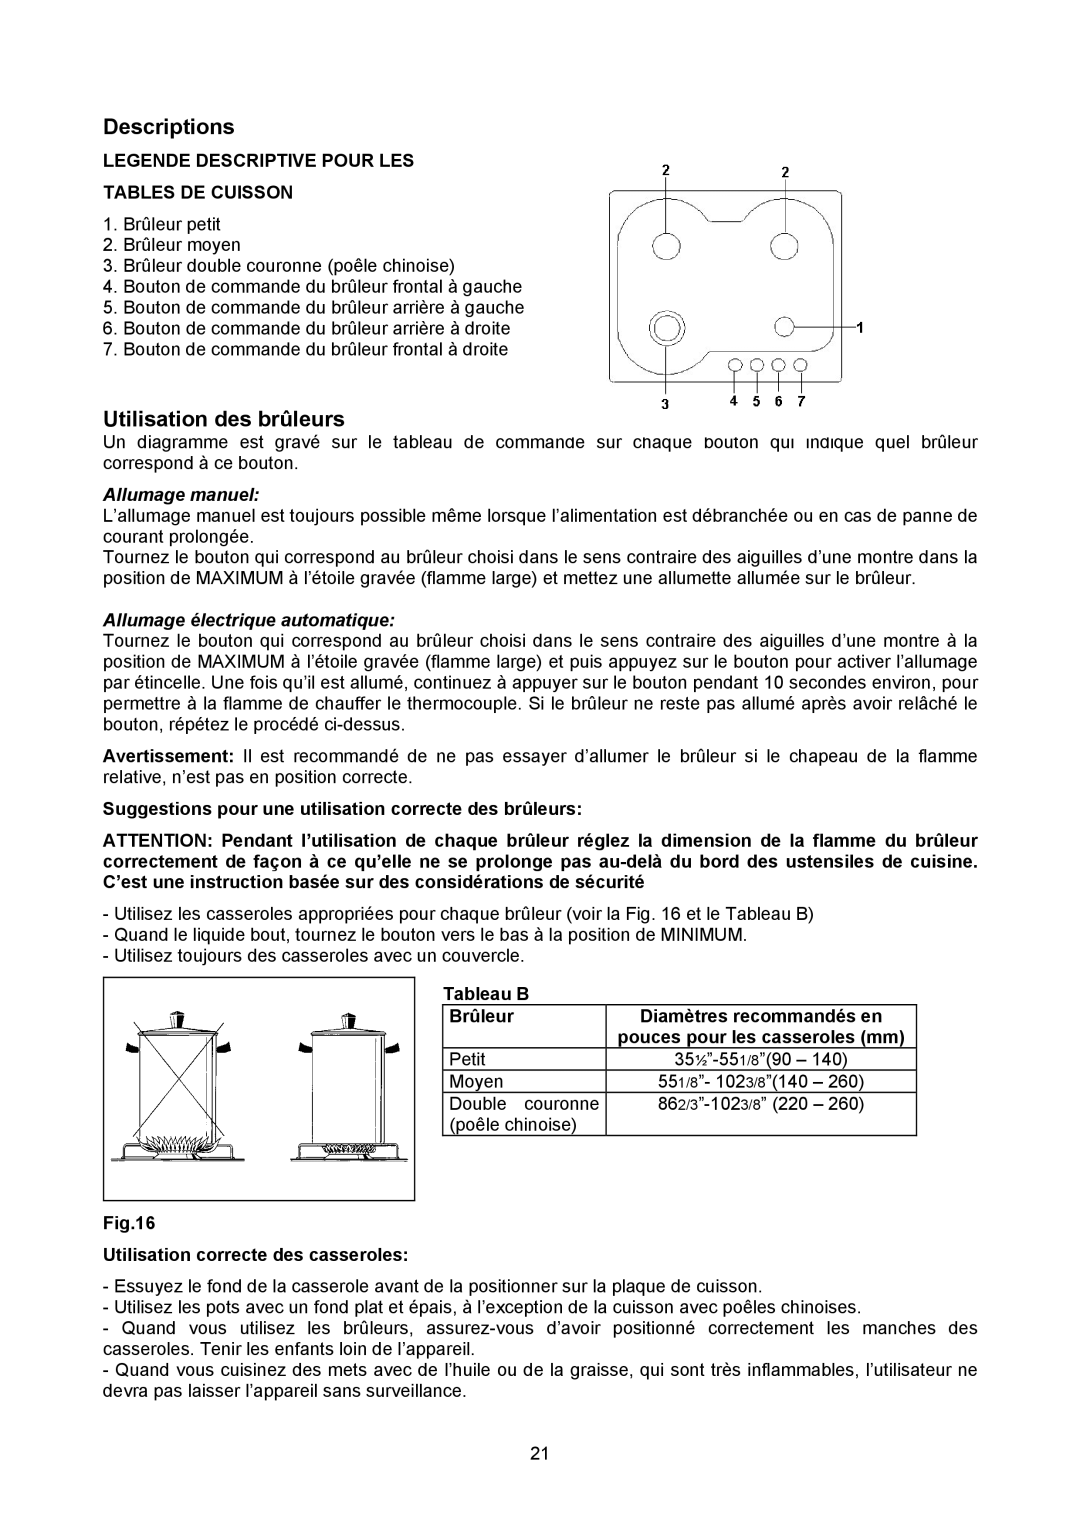 Bertazzoni P24 4 00 X manual Utilisation des brûleurs, Suggestions pour une utilisation correcte des brûleurs 